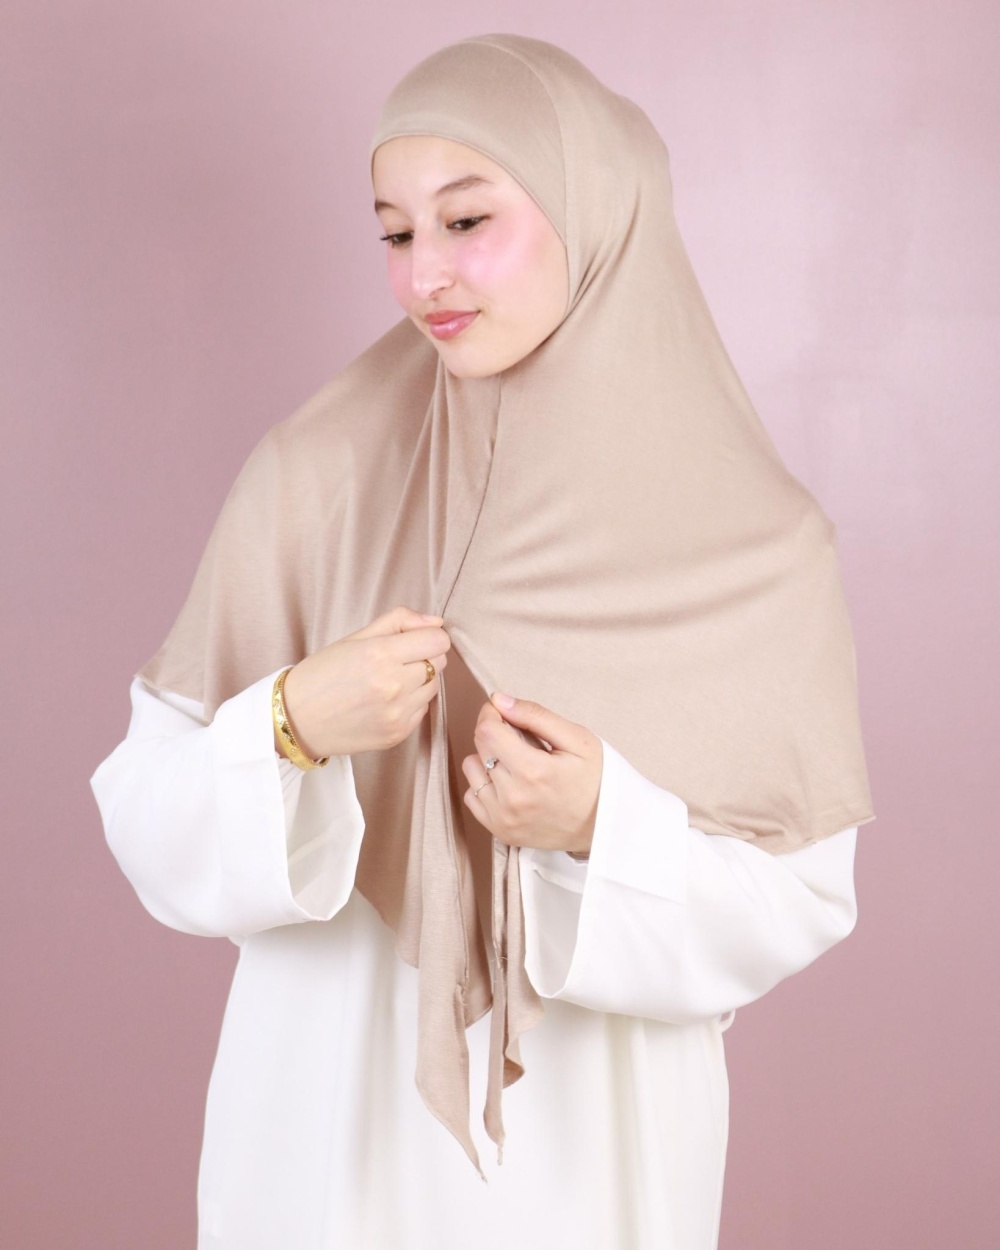 Lamis Hijab - Jupe chemise pour la femme voilée